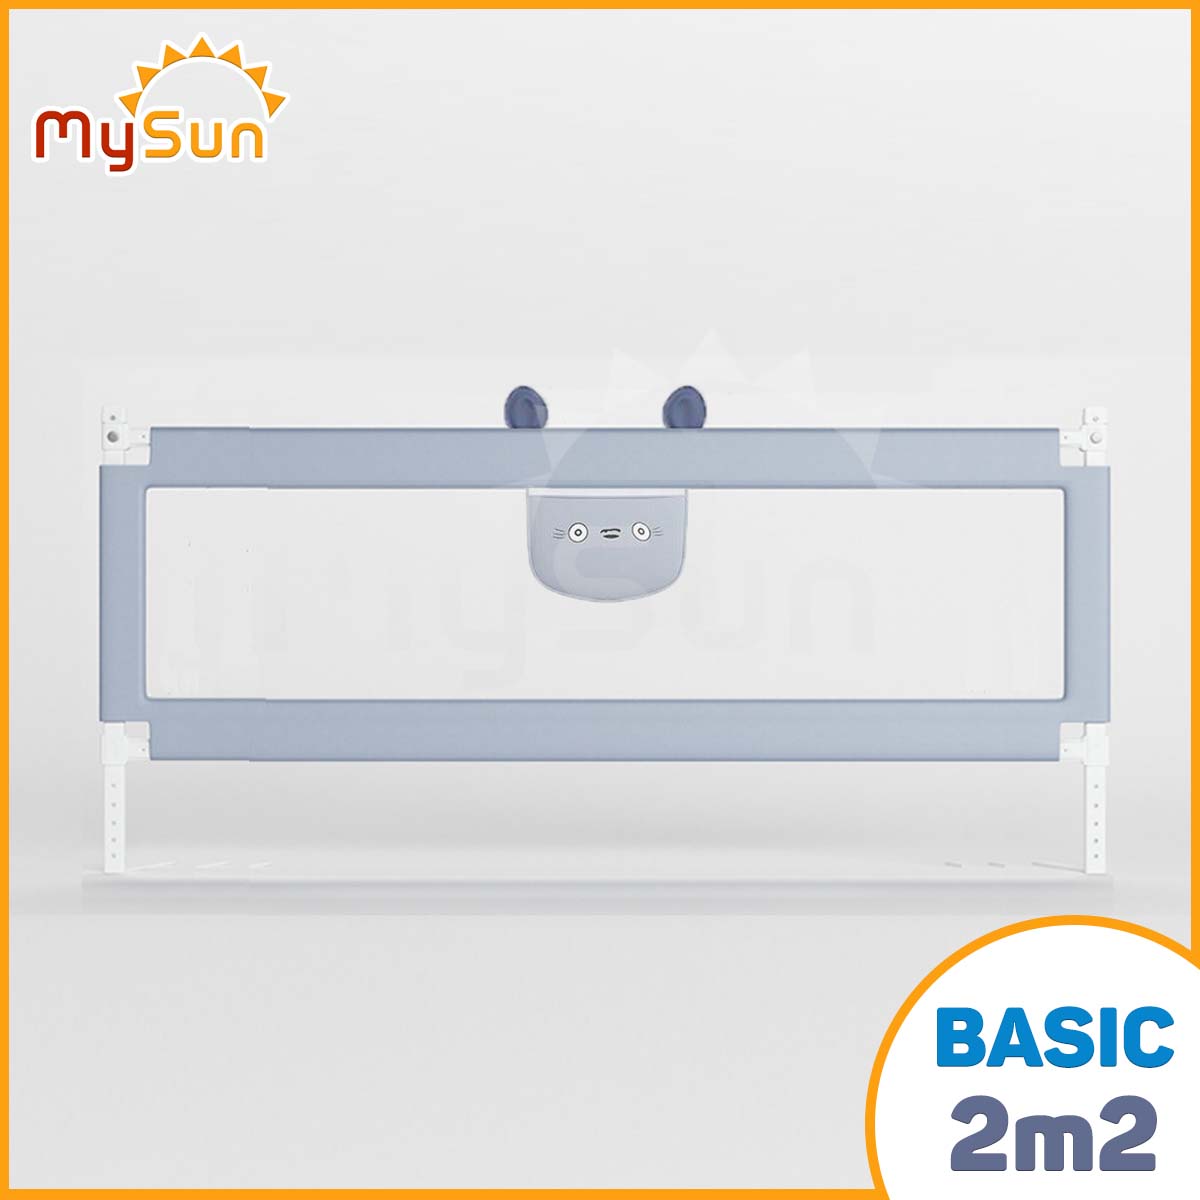 Thanh chắn giường dạng trượt cho bé MySun kích thước 1m2 1m5 1m8 1m9 2m 2m2